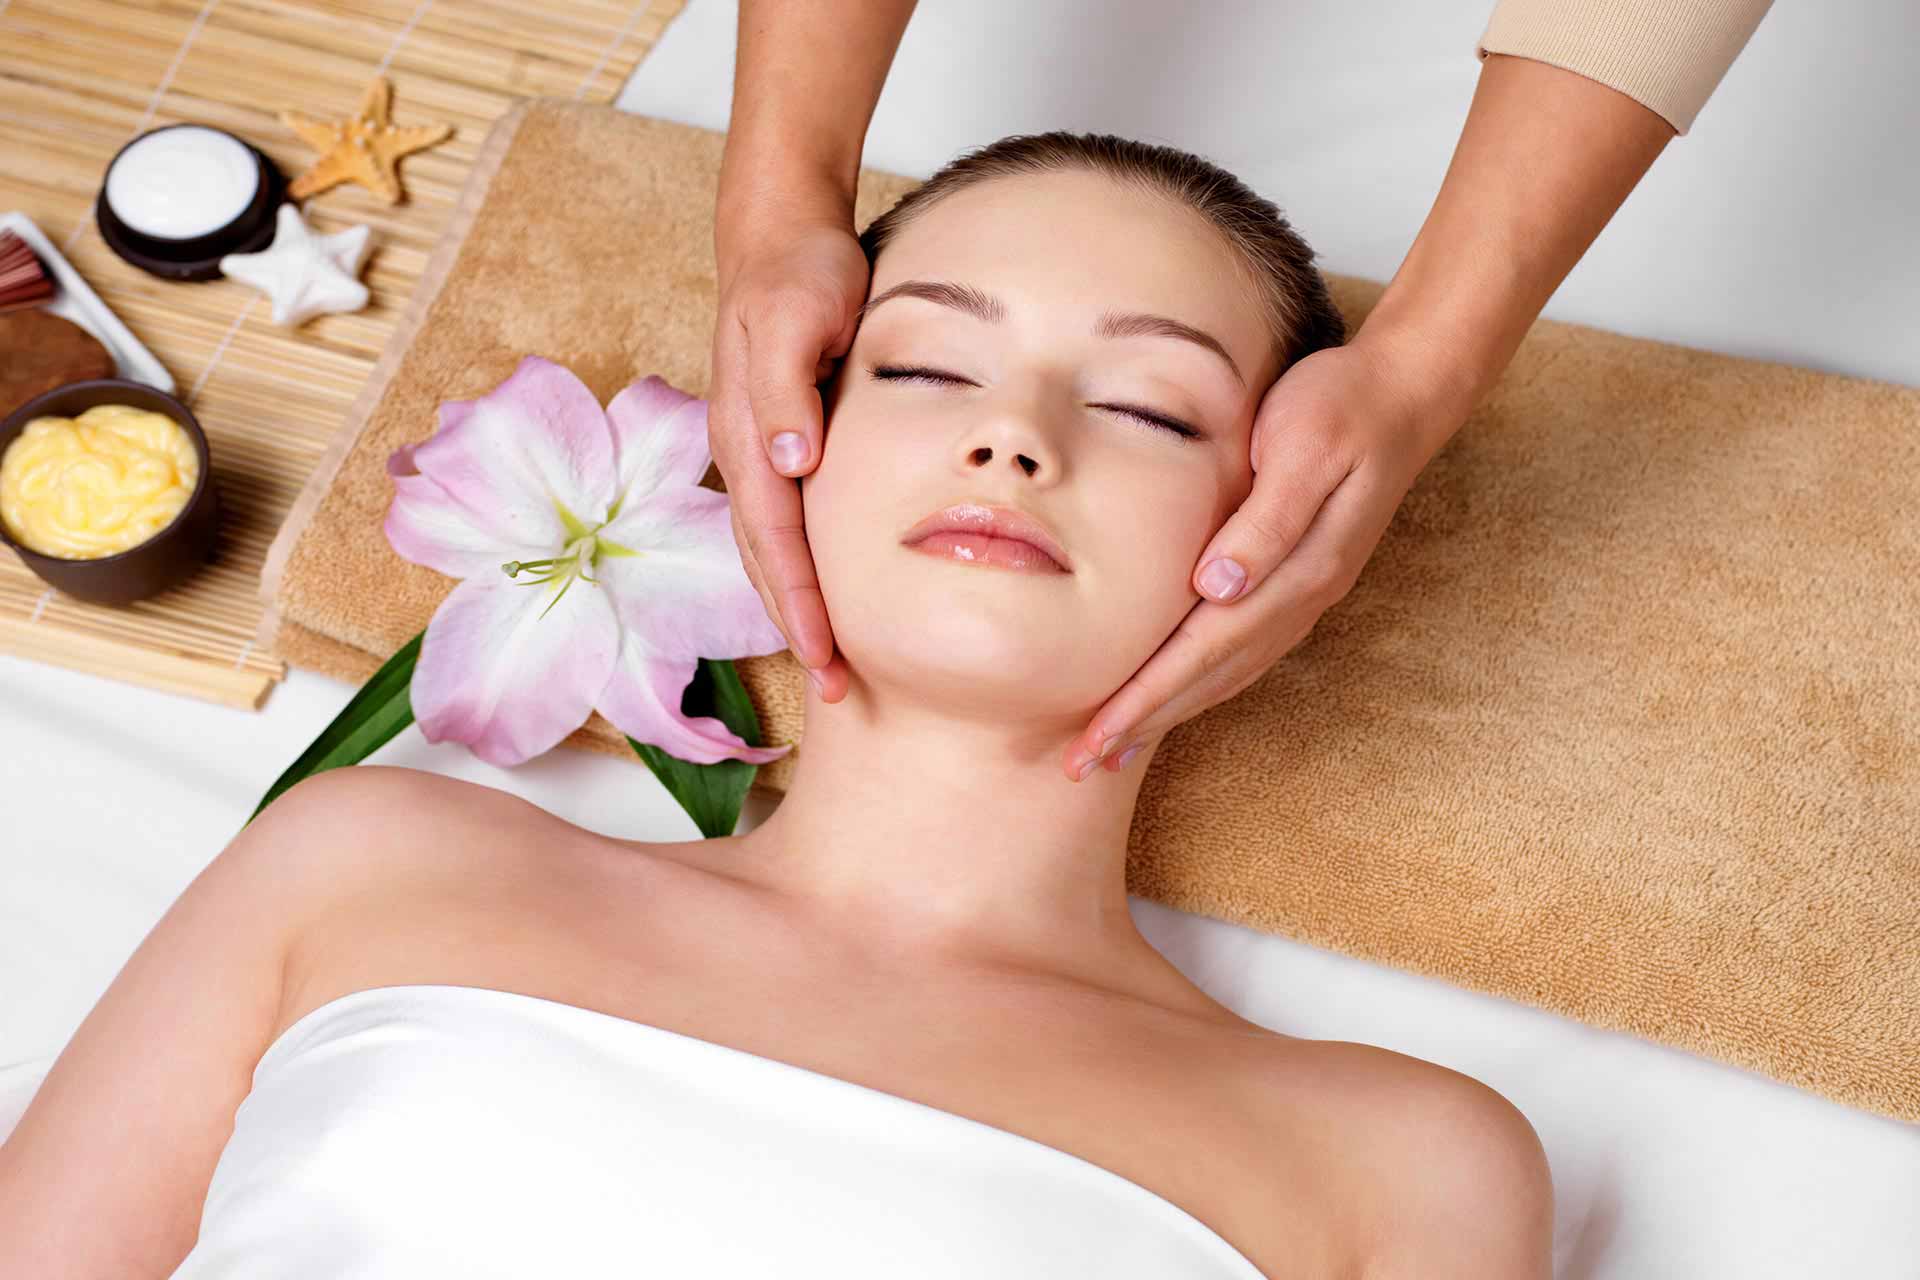 Thủy Nguyễn Spa sẽ giúp bạn thư giãn hoàn toàn bằng các liệu pháp massage da mặt chuyên nghiệp nhất